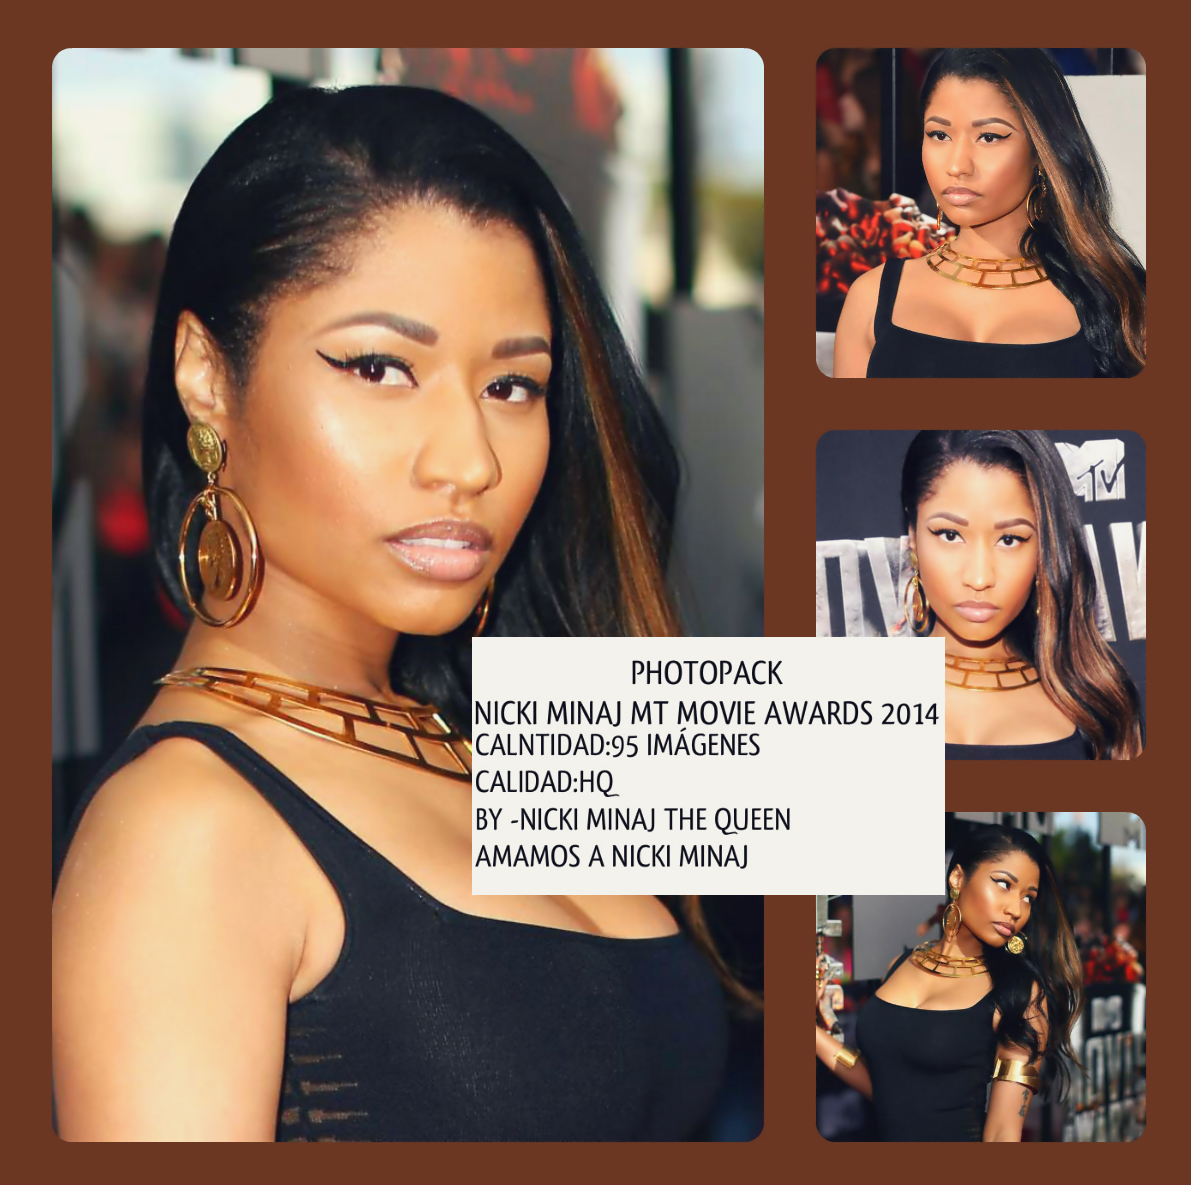 PhotoPack Nicki Minaj MTV Movie Awards 2014